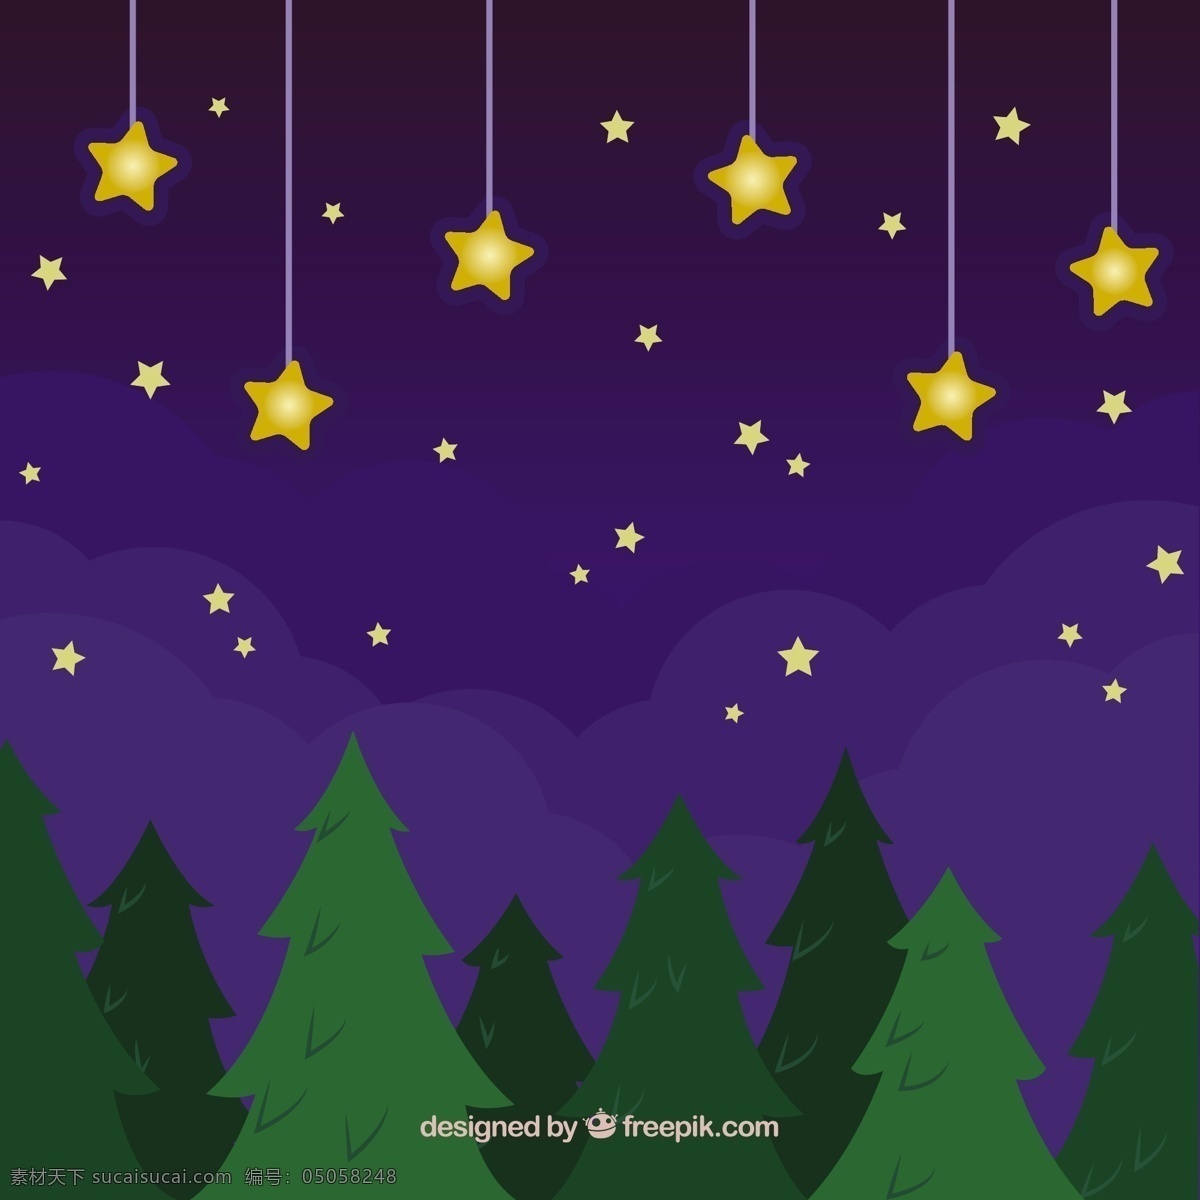 夜晚 金色 星星 树 背景 抽象背景 抽象 明星 装饰 平面 树木 平面设计 造型 悬挂 金色背景 明星背景 明亮